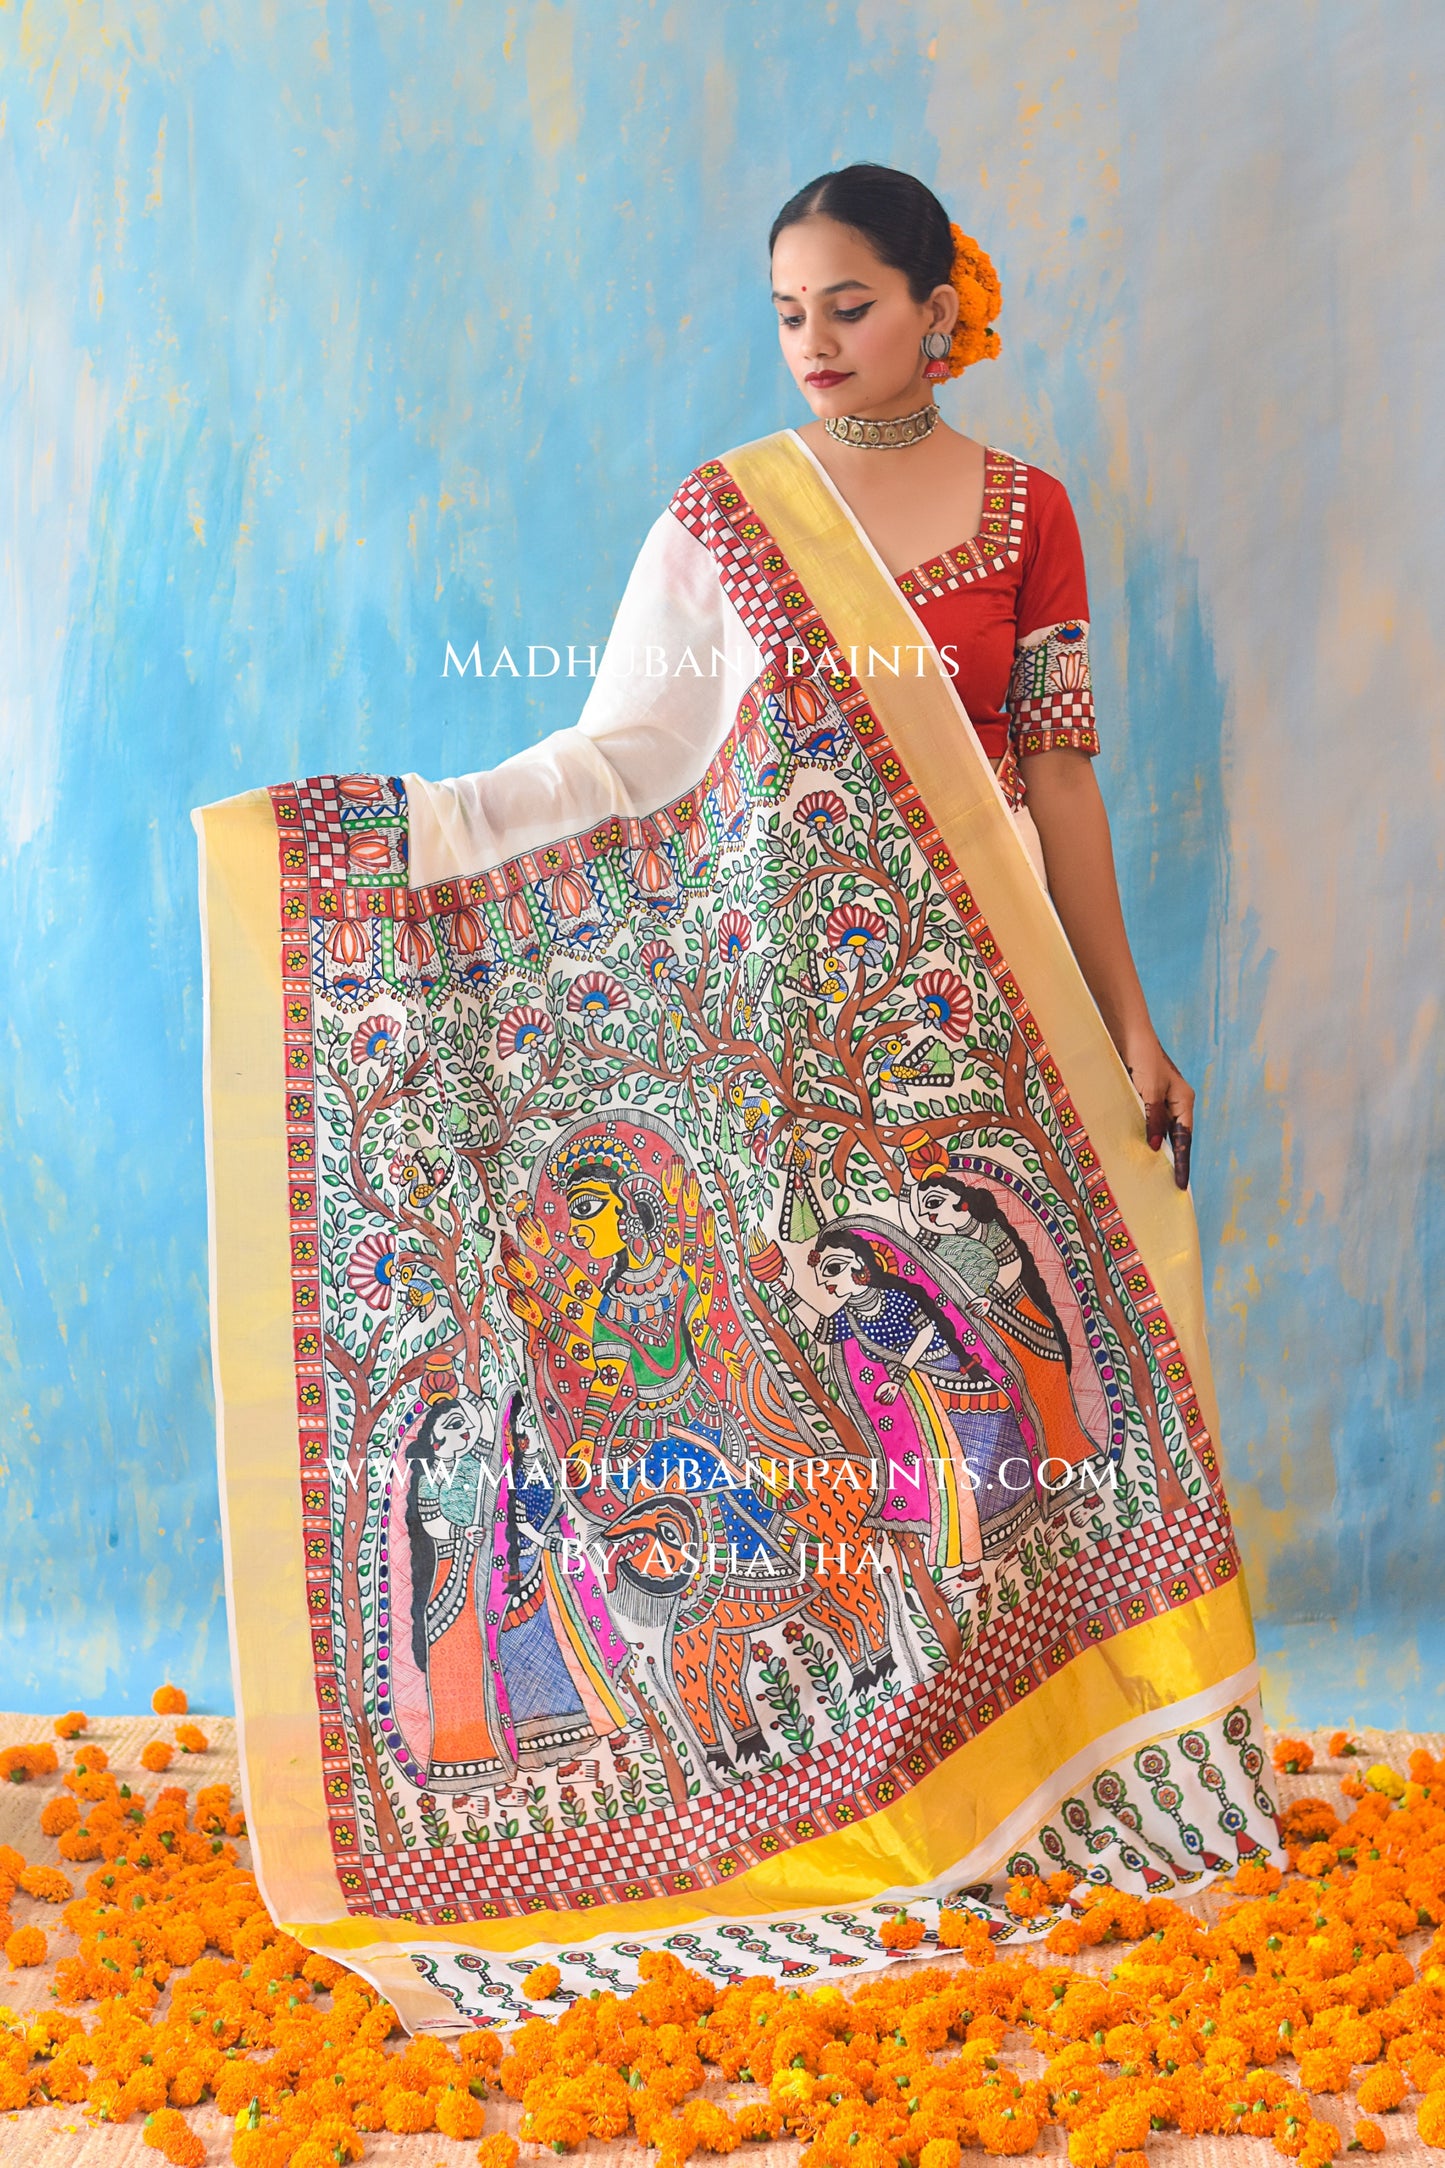 BHAIRAVI Hand-painted Madhubani Handloom Cotton Saree